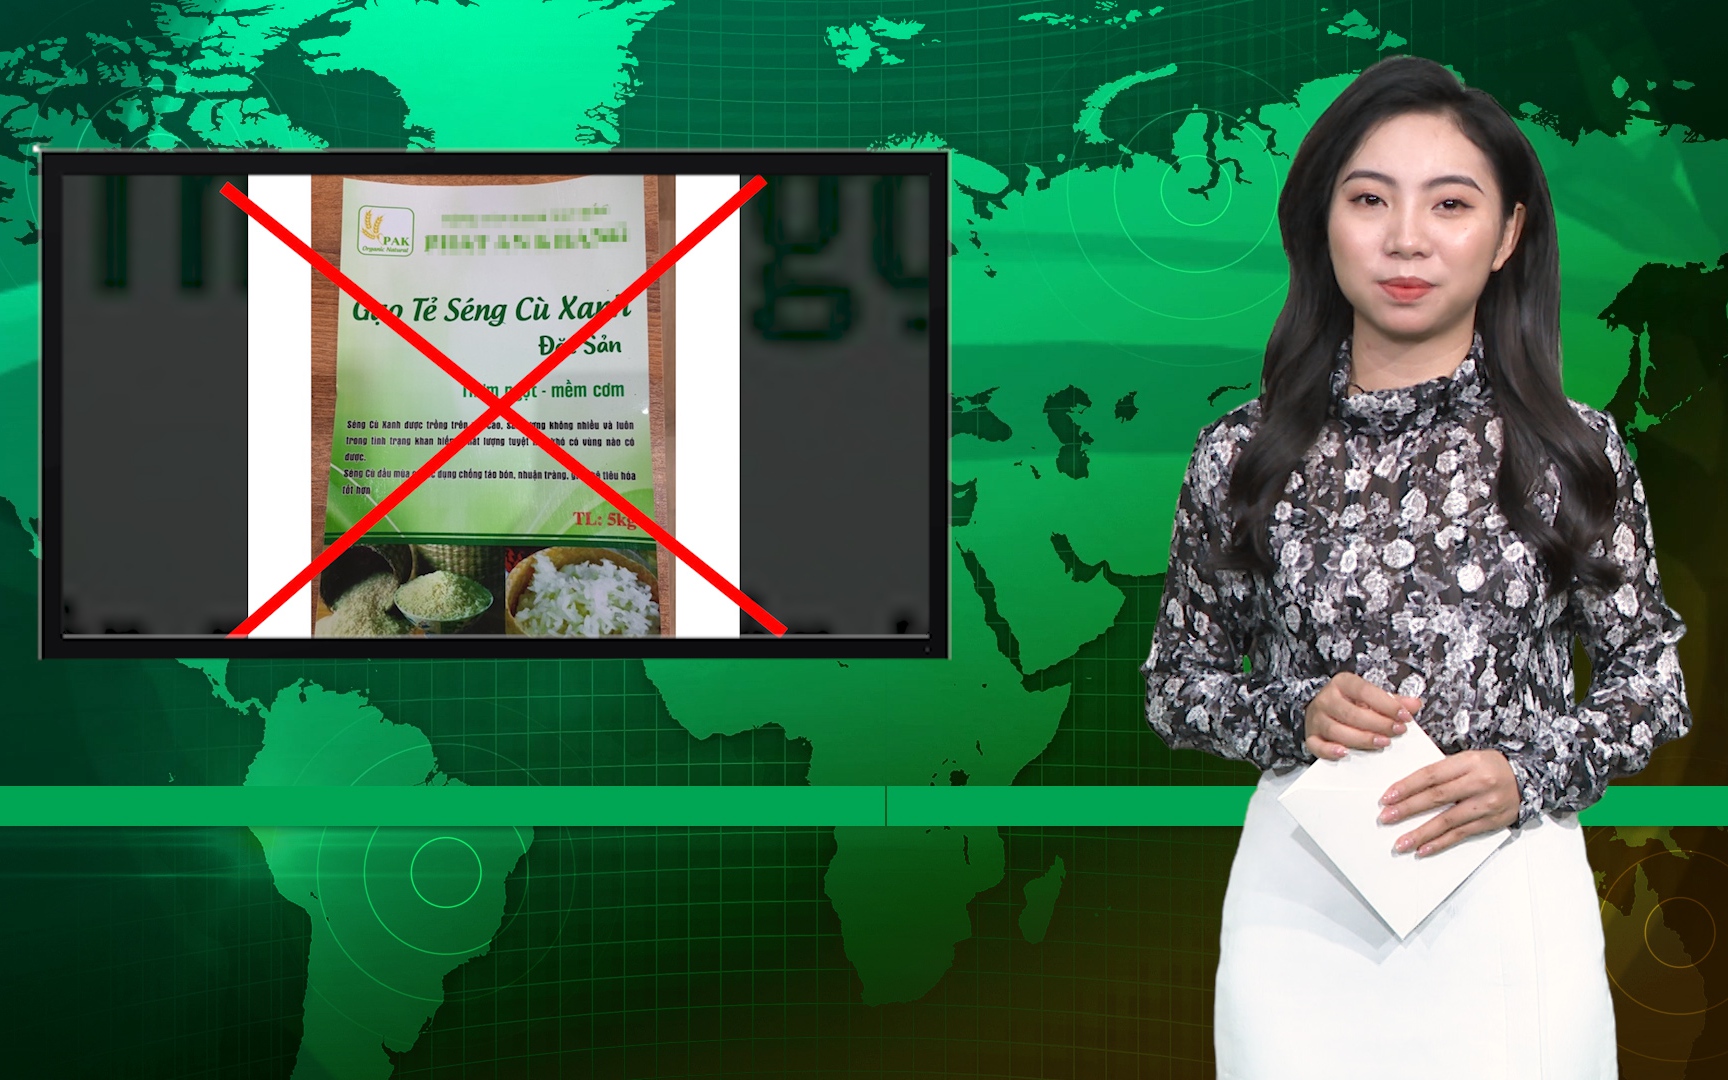 Bản tin Dân Việt Nóng 13/11: Sự thật bất ngờ về gạo Séng Cù xanh đang gây sốt mạng